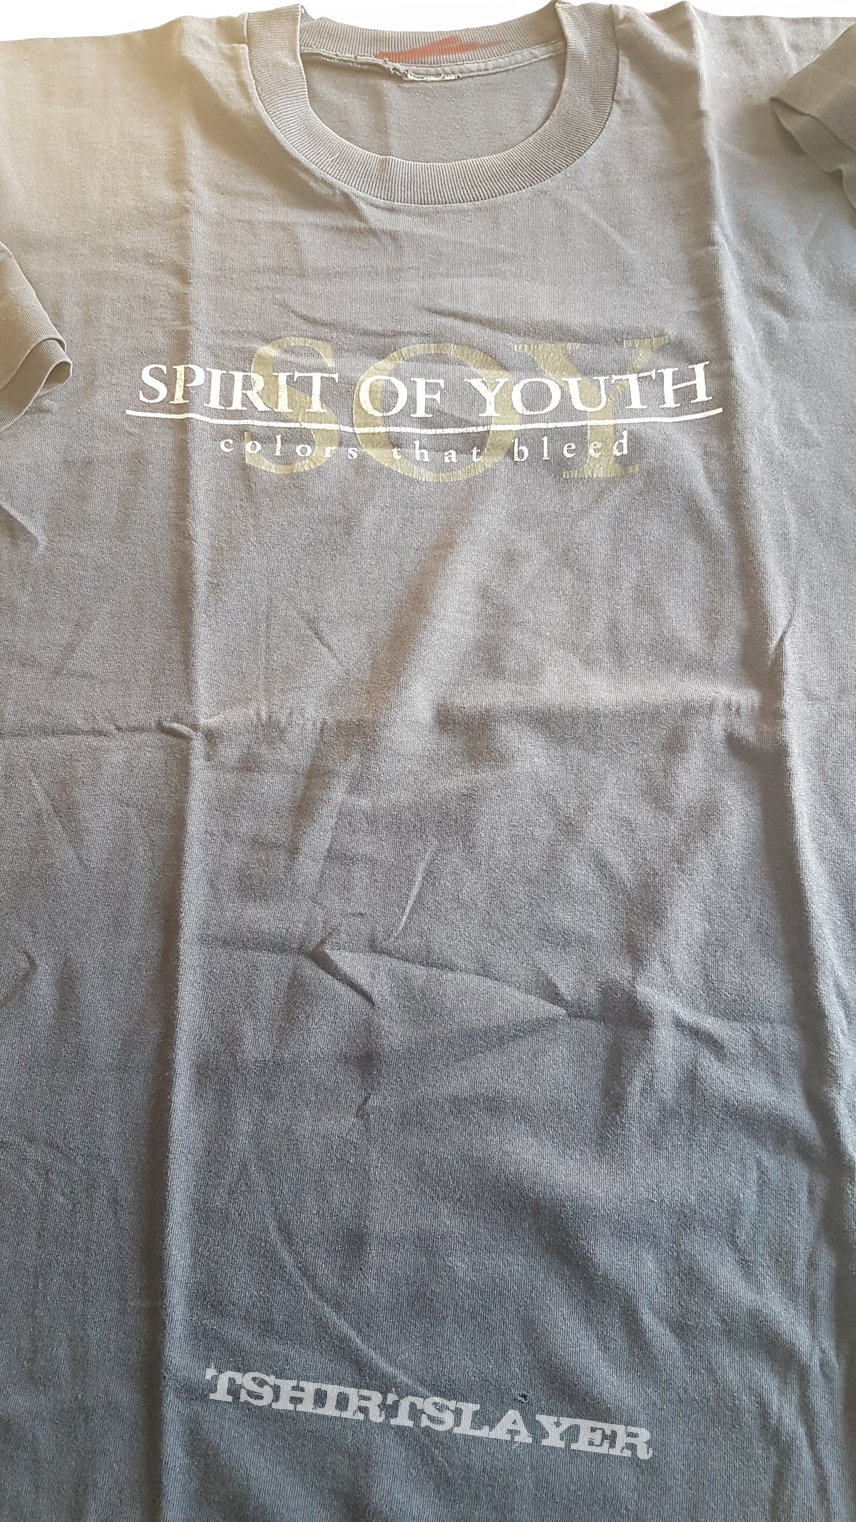 Spirit of Youth, 1998 shirt